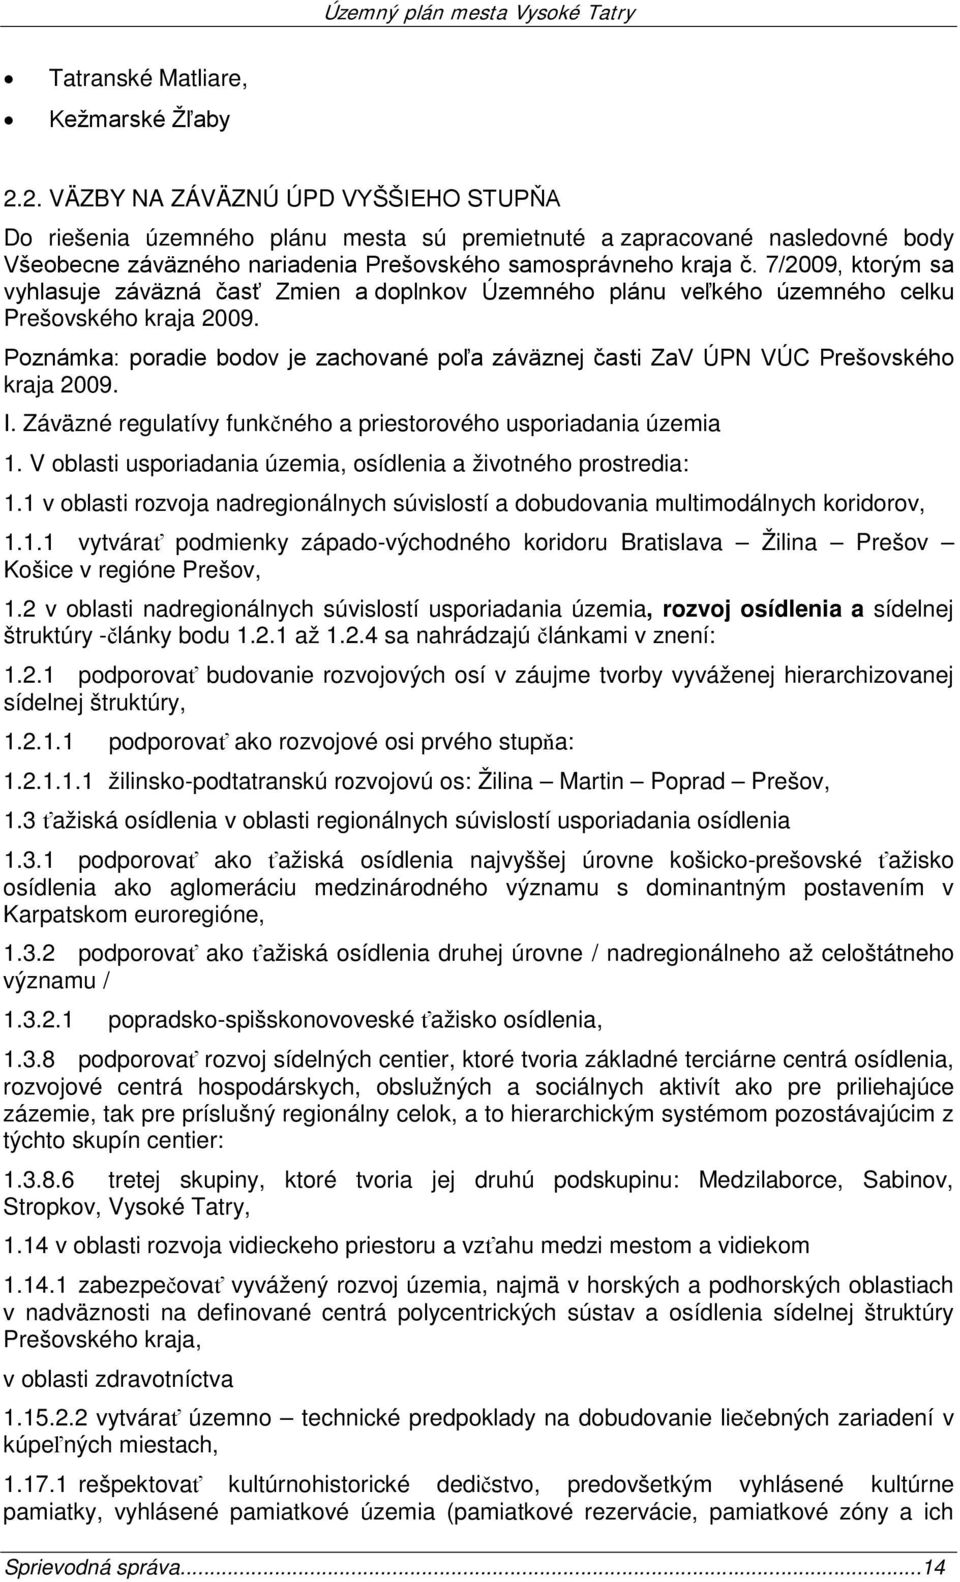 7/2009, ktorým sa vyhlasuje záväzná časť Zmien a doplnkov Územného plánu veľkého územného celku Prešovského kraja 2009.